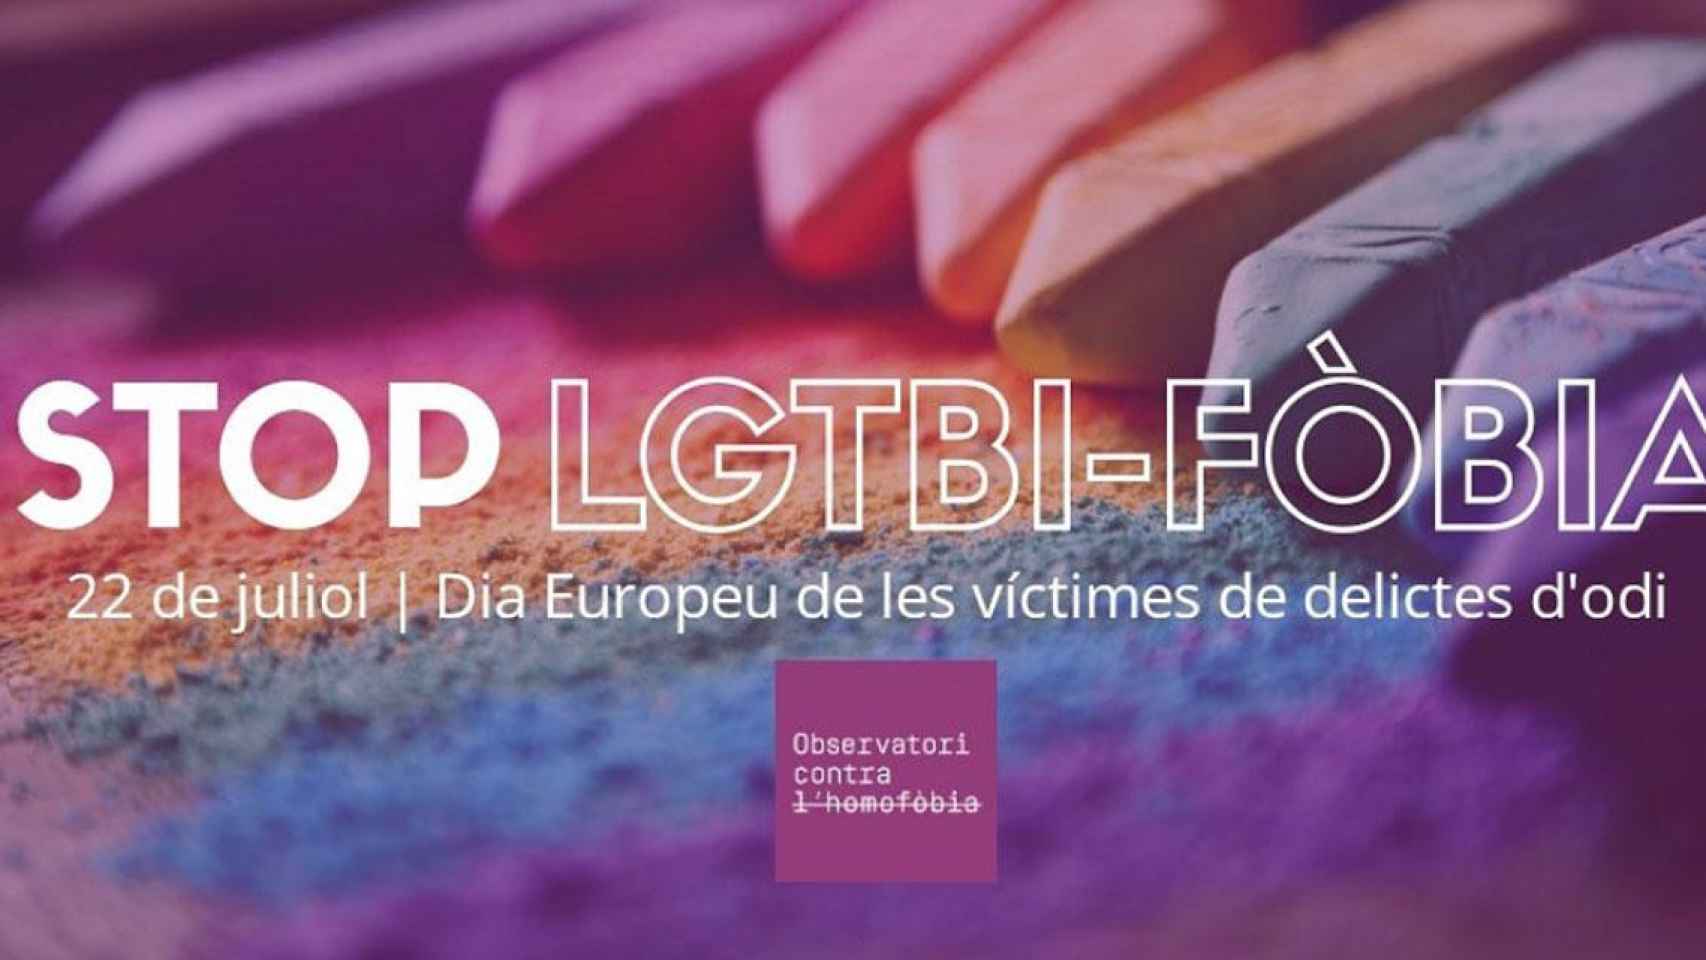 Cartel que condena los ataques y discriminaciones contra el colectivo LGTBI / OCH